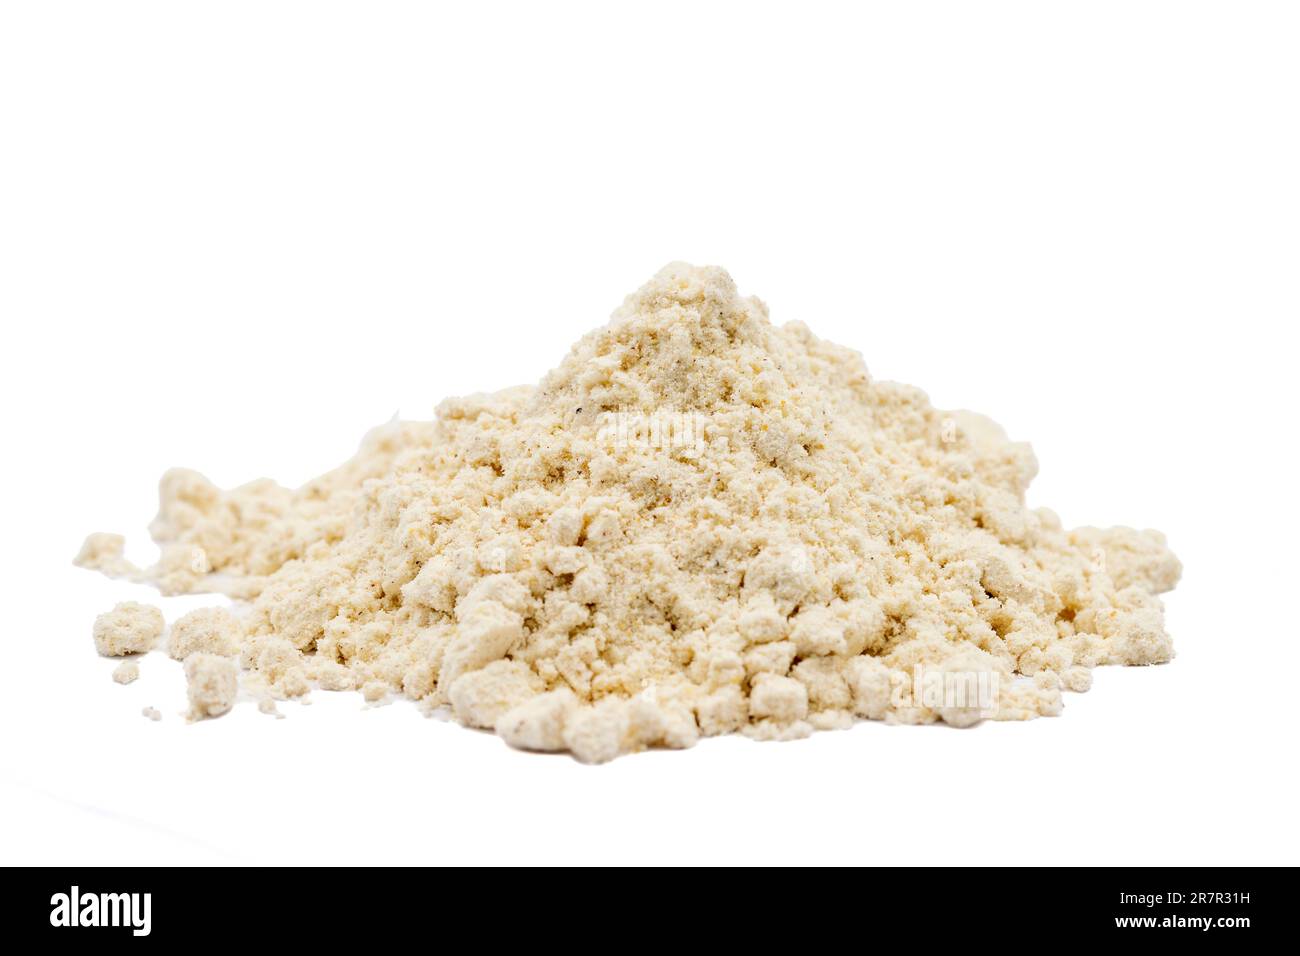 Mahlep powder isolated on white background. Pile of mahleb. close up Stock Photo